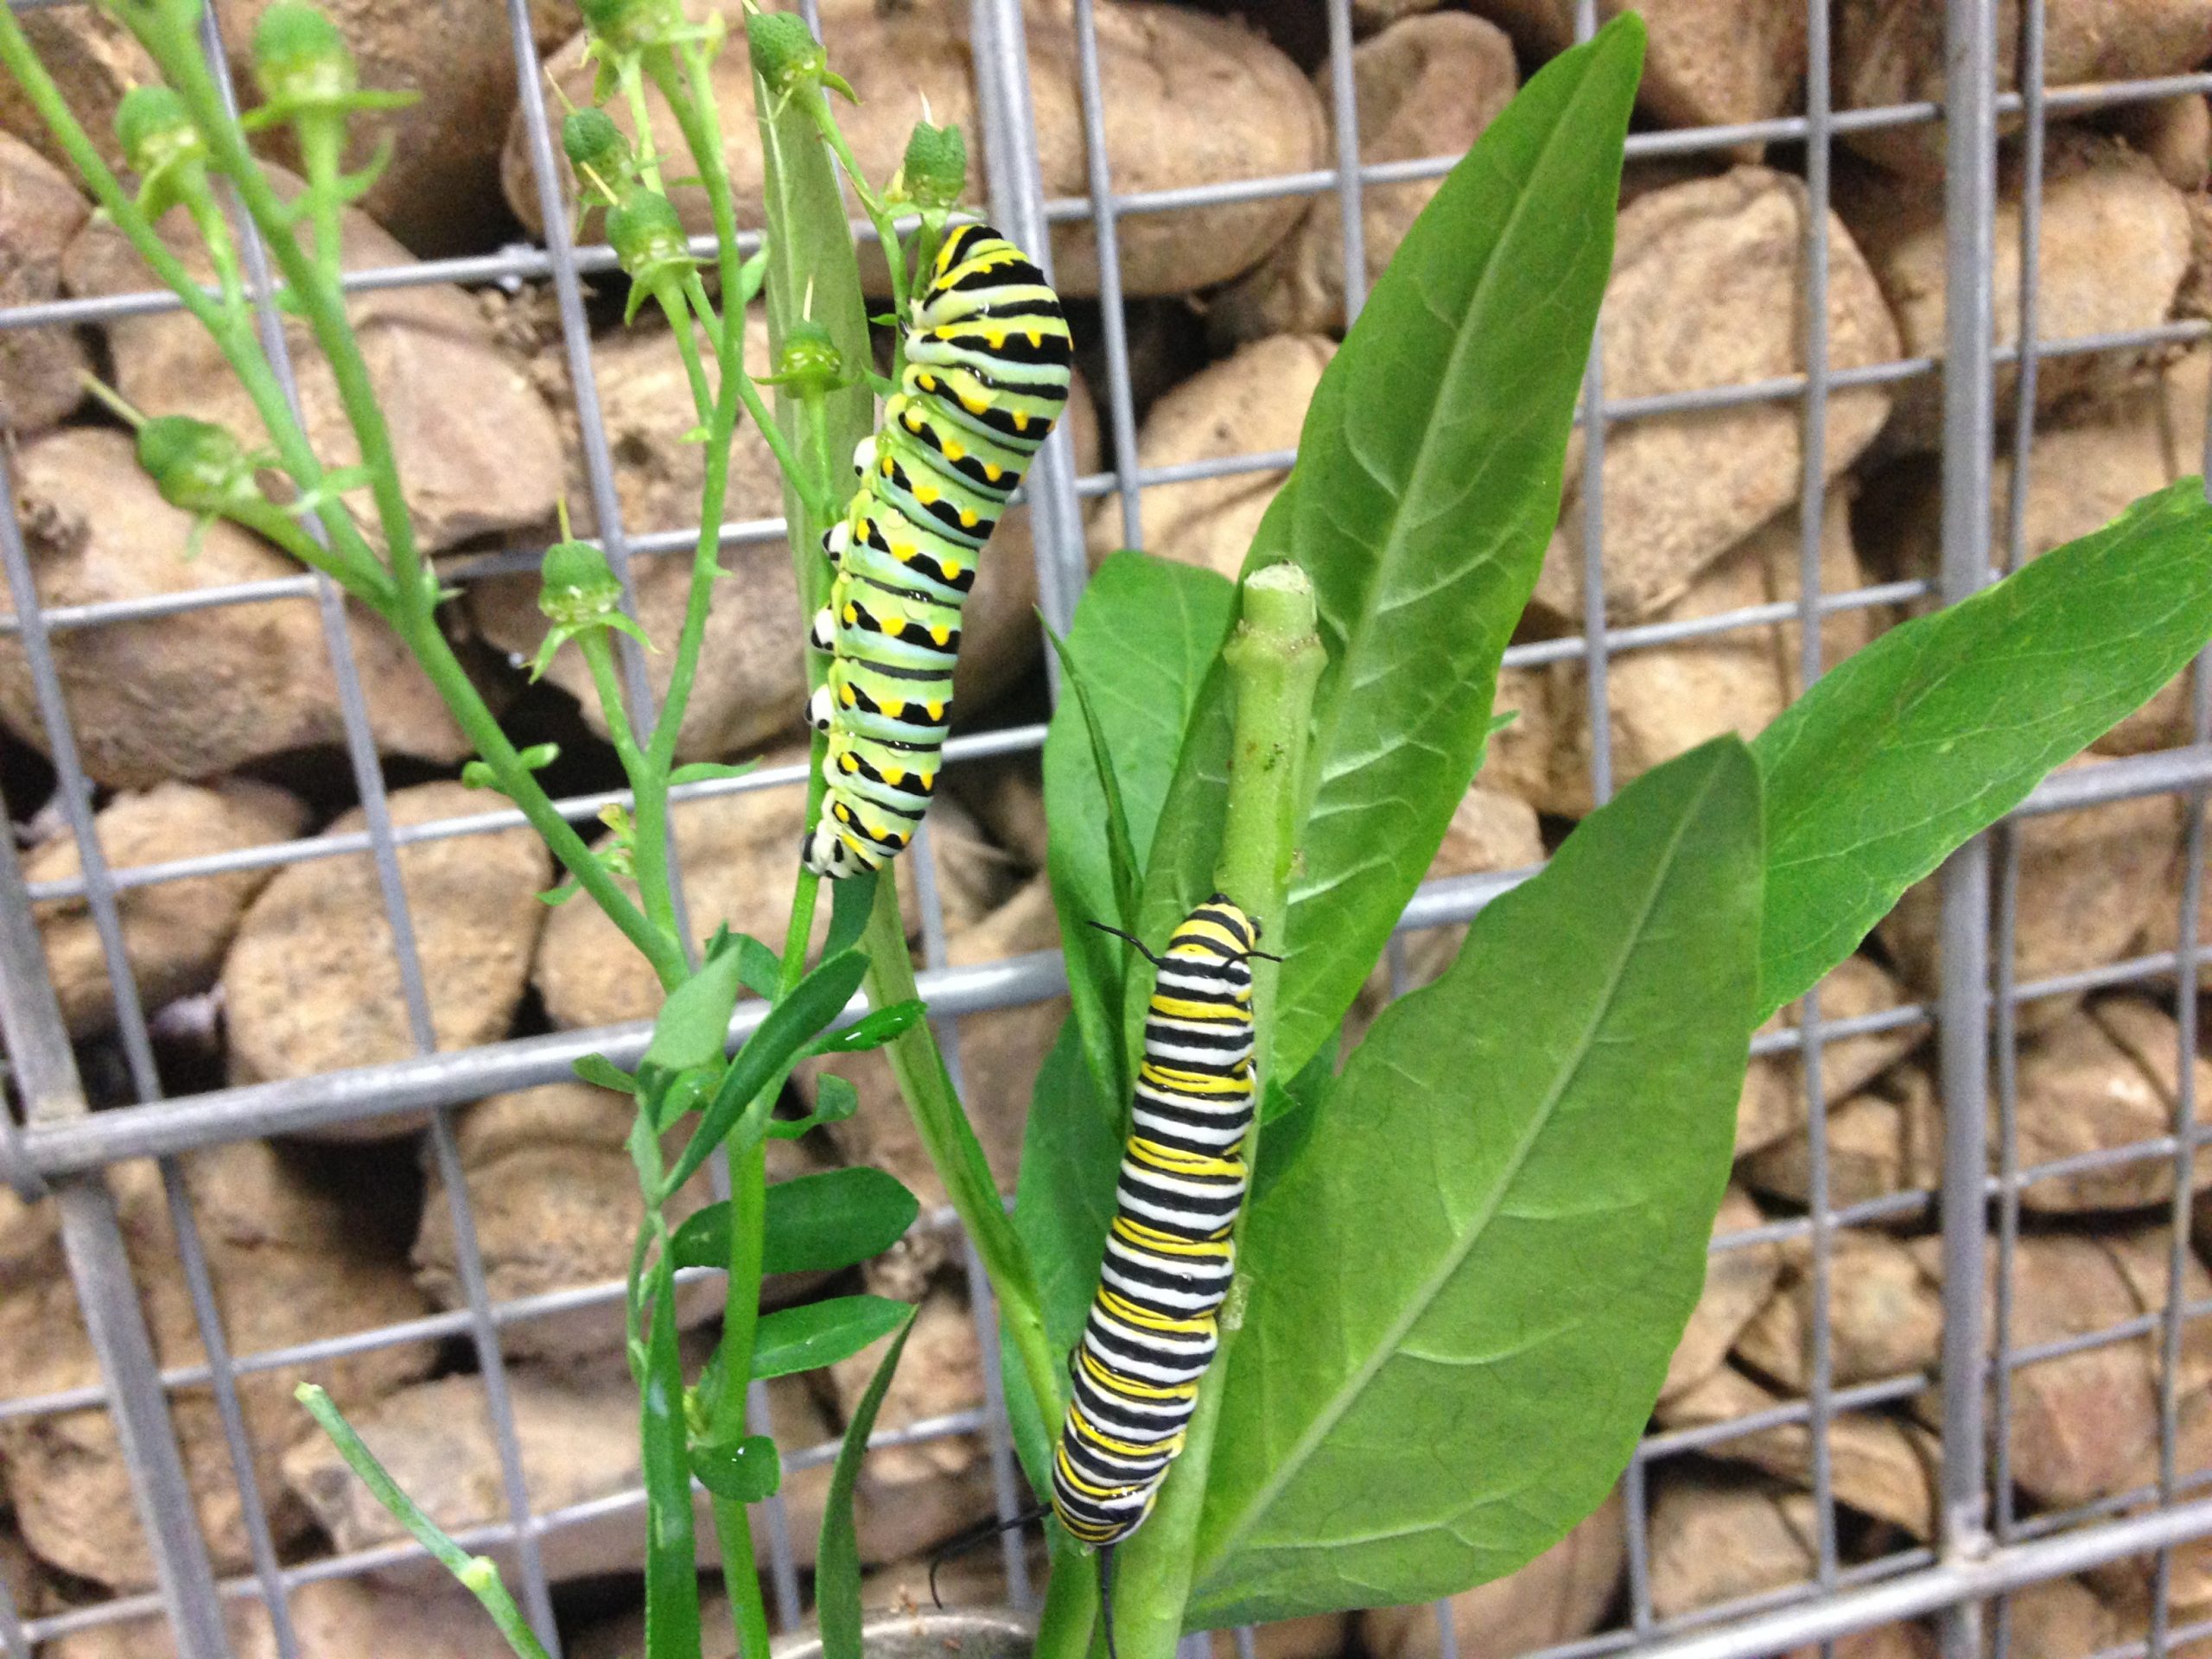 Swallowtail Monarch caterpillar